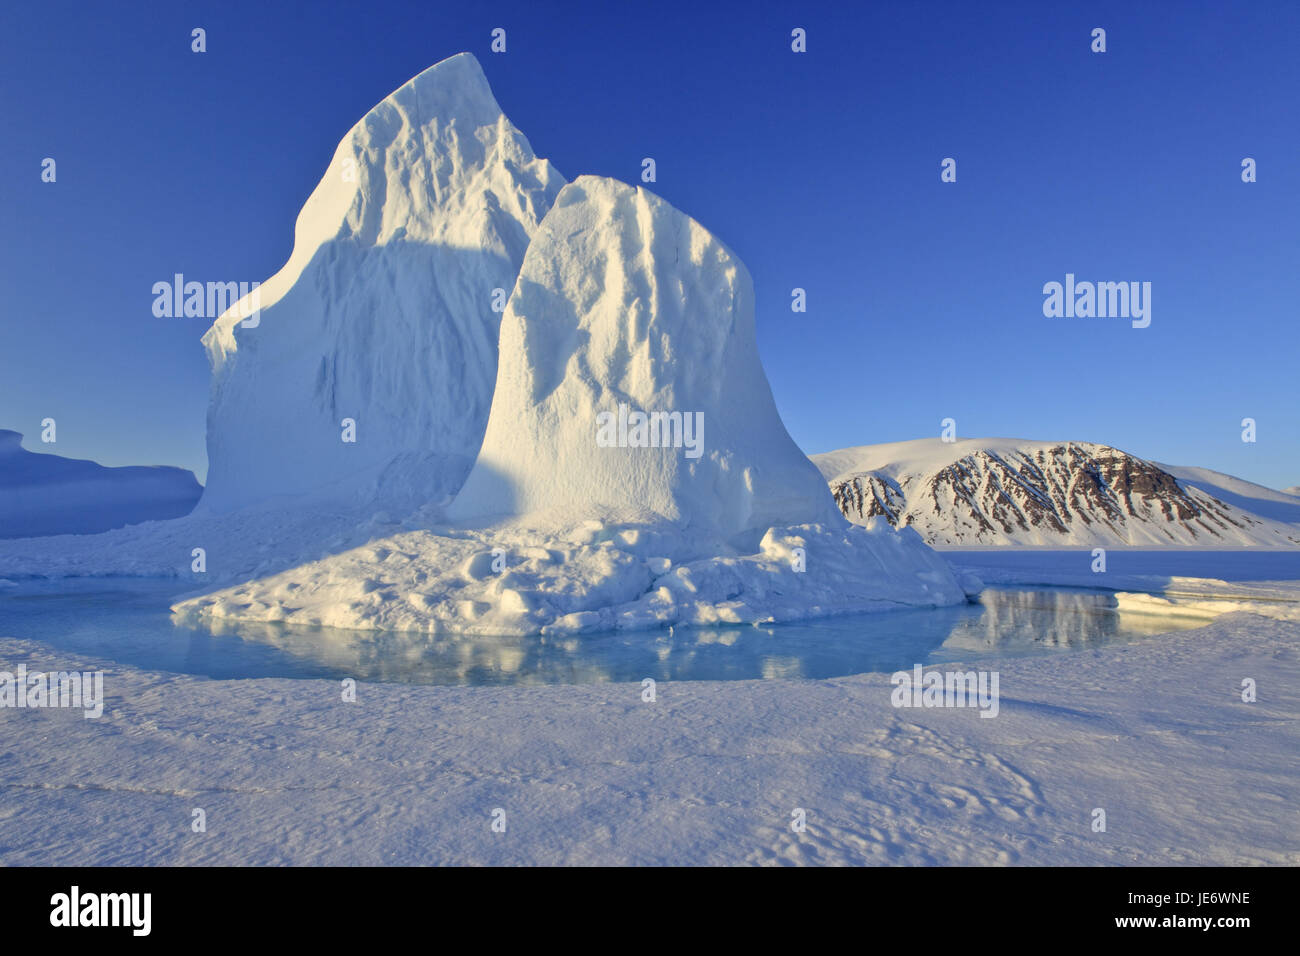 Norteamérica, Canadá, Nunavut Nordkanada Baffin Islandia, estanque, Eclipse, entrada de sonido, hielo, Iceberg, Foto de stock